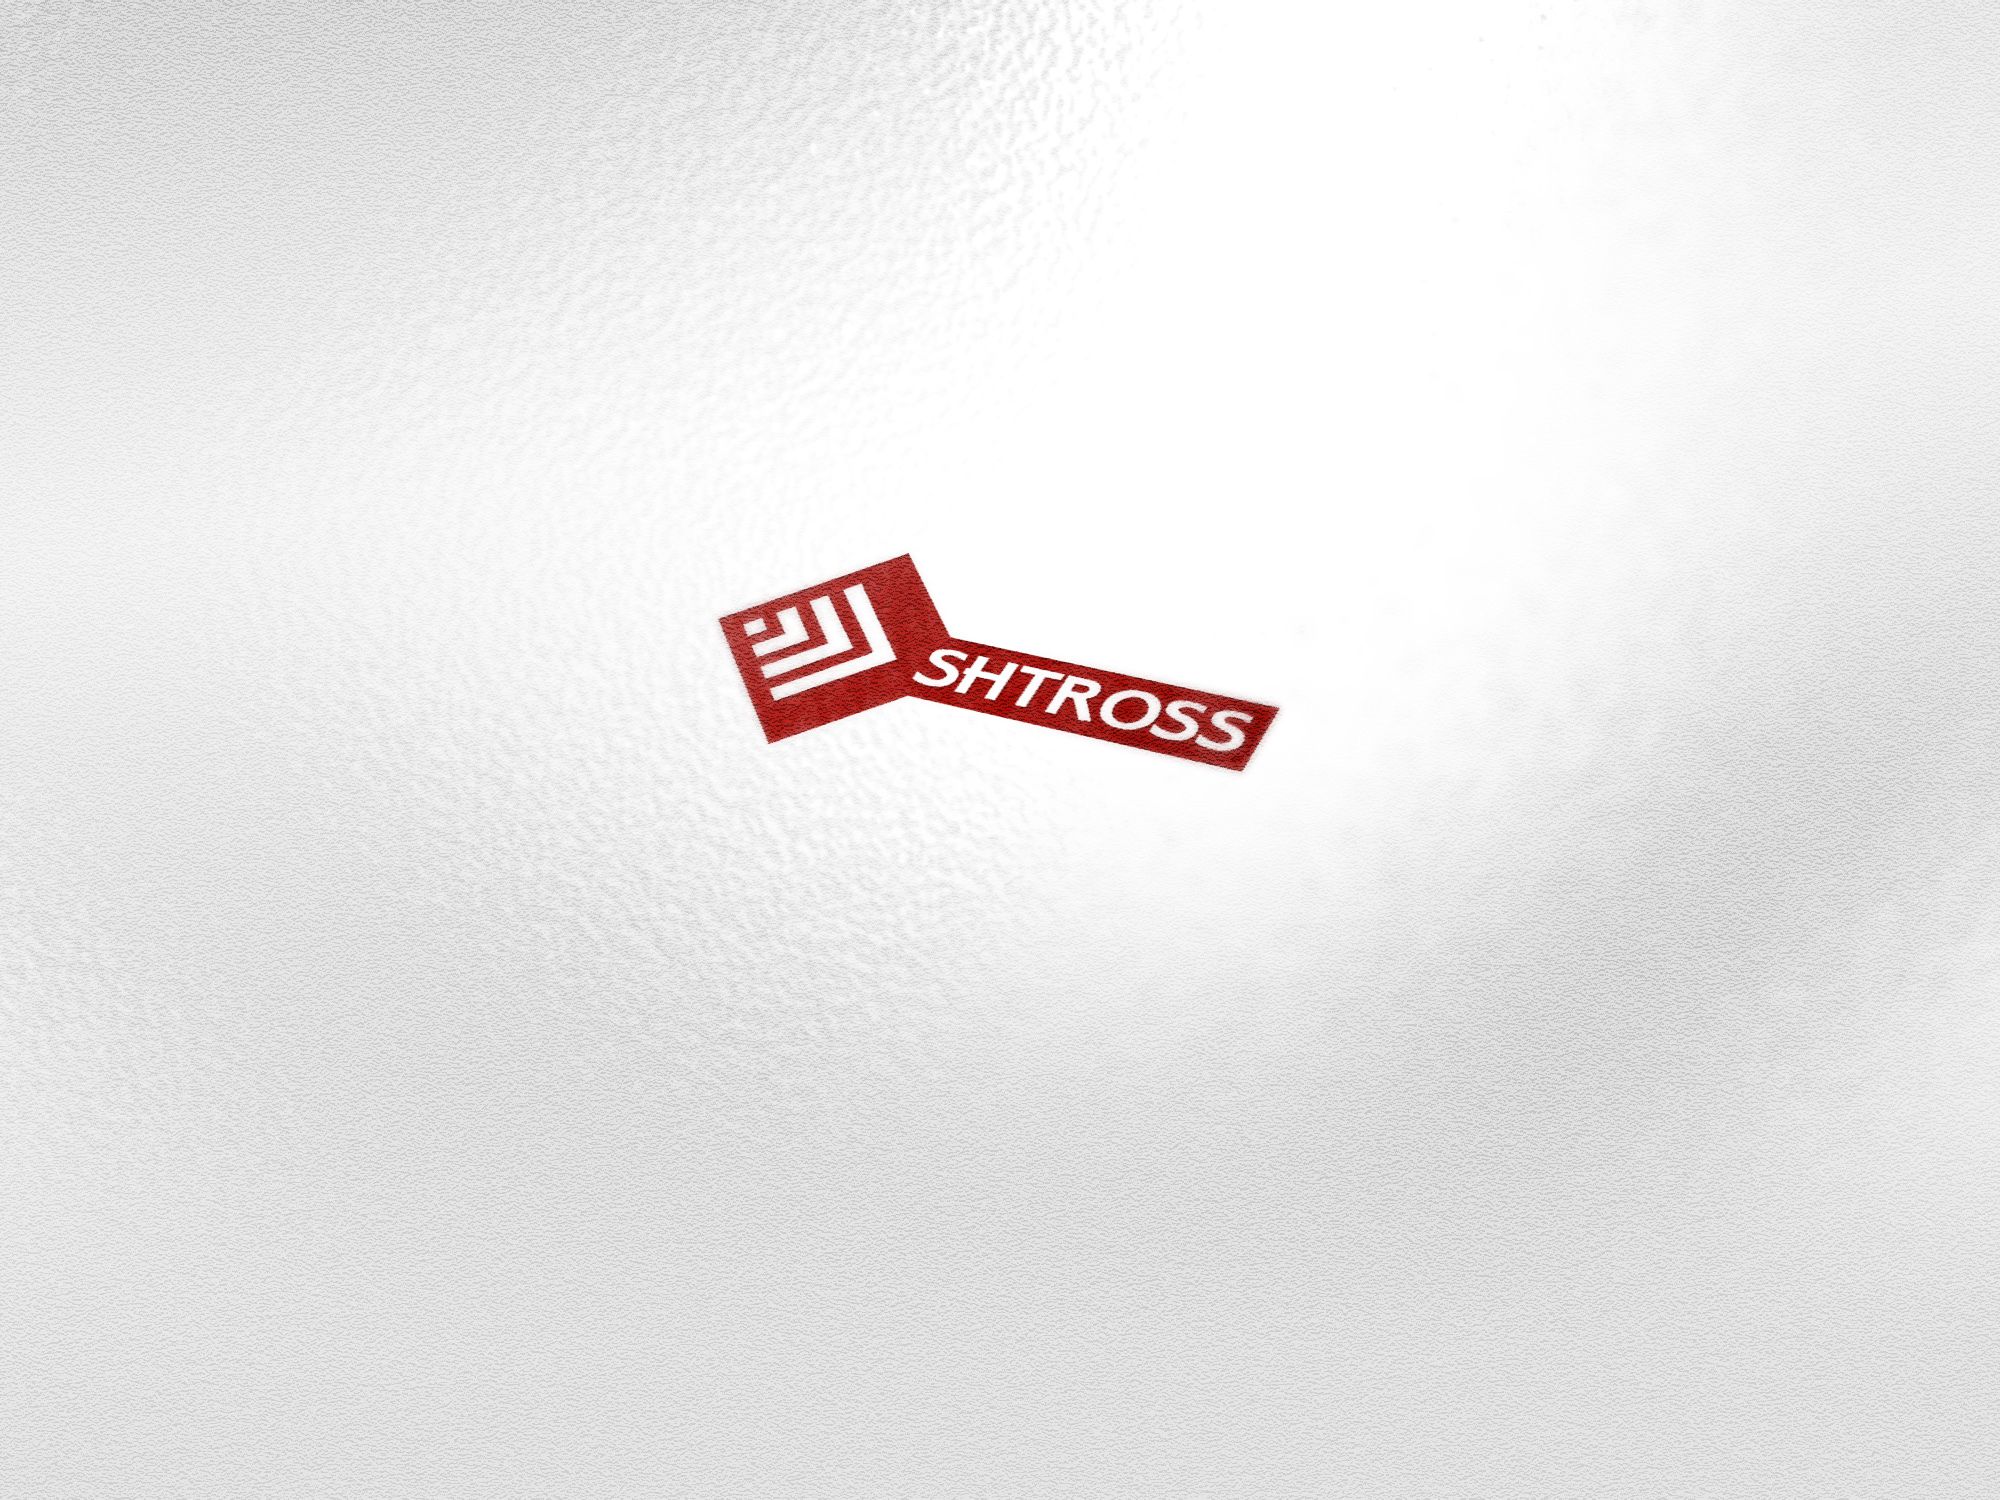 Логотип для строительной компании SHTROSS - дизайнер PelmeshkOsS